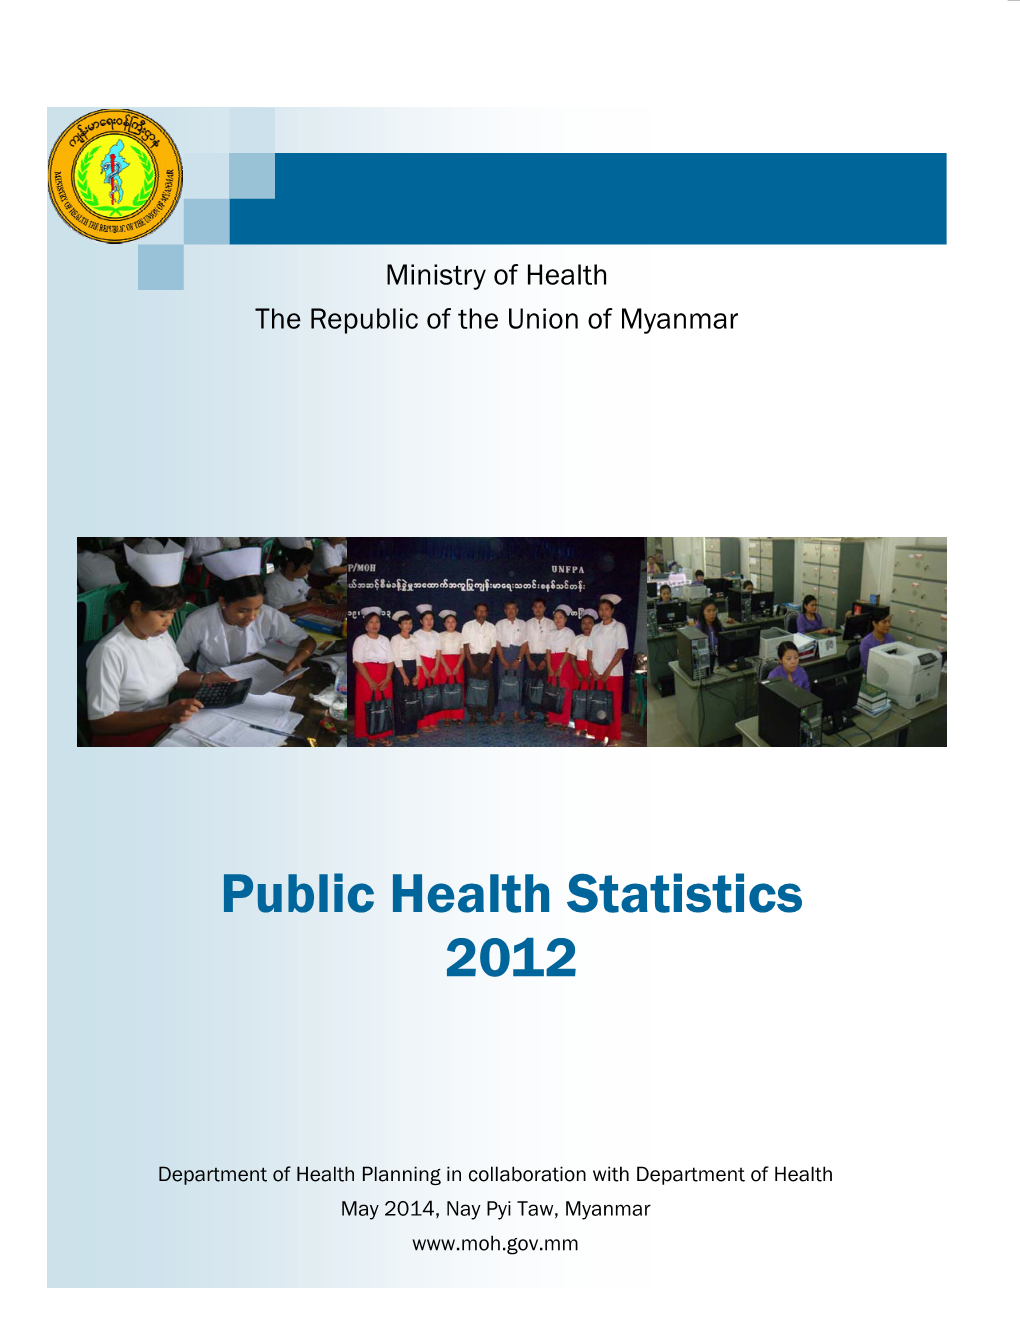 Public Health Statistics 2012